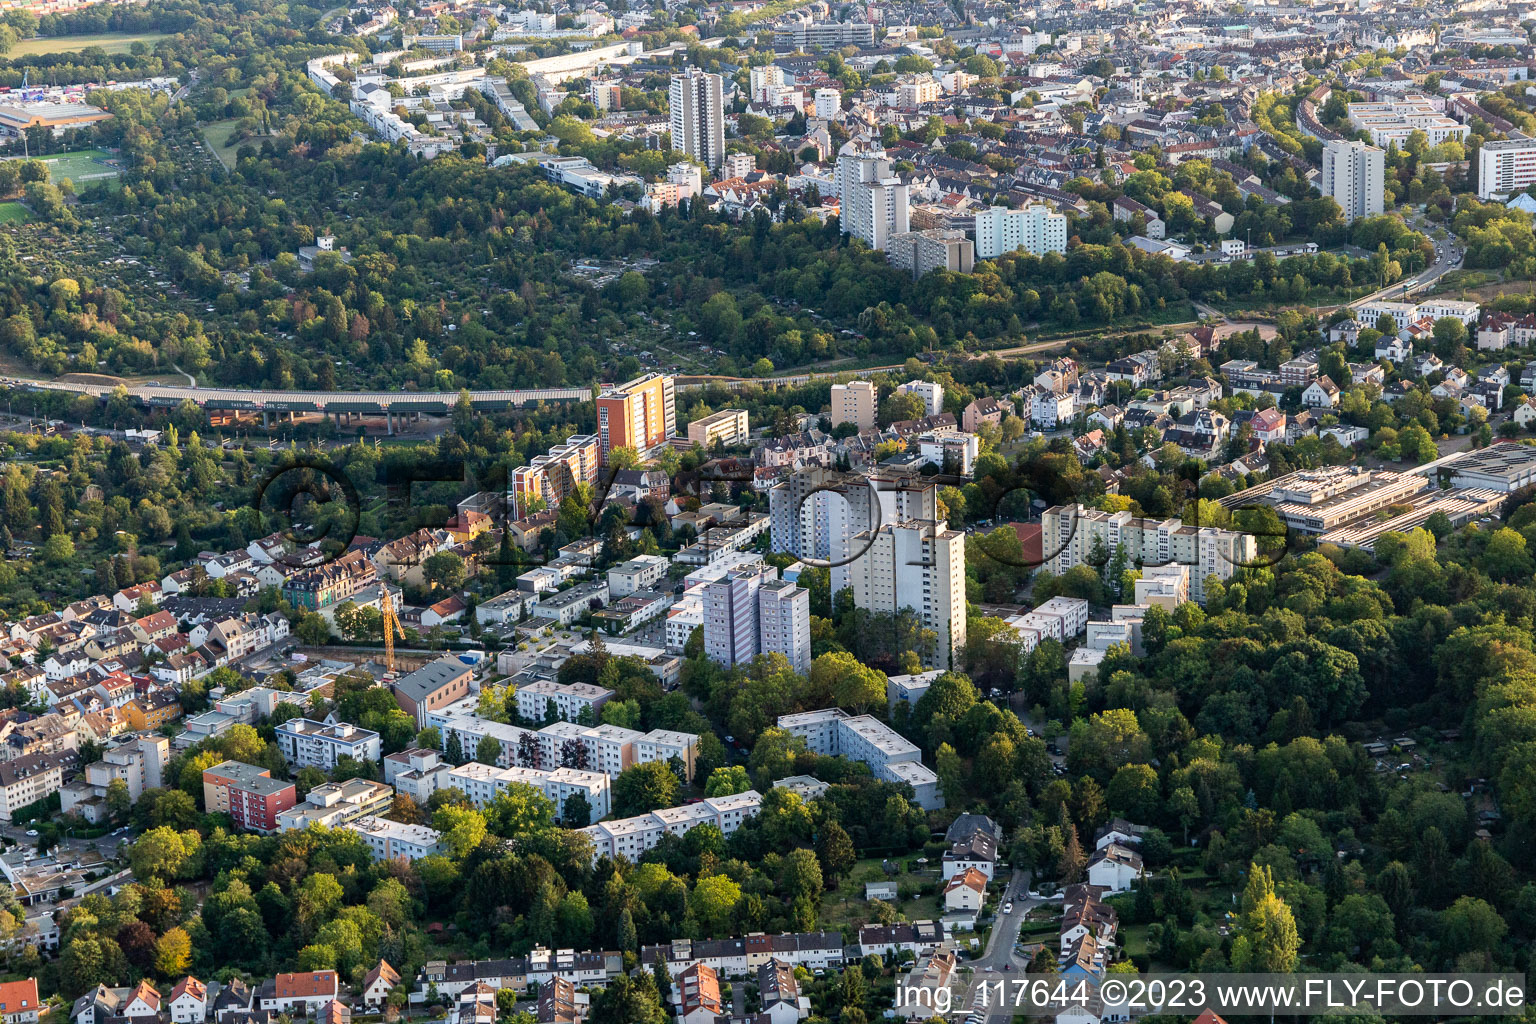 Luftbild von Ortsteil Seckbach in Frankfurt am Main im Bundesland Hessen, Deutschland